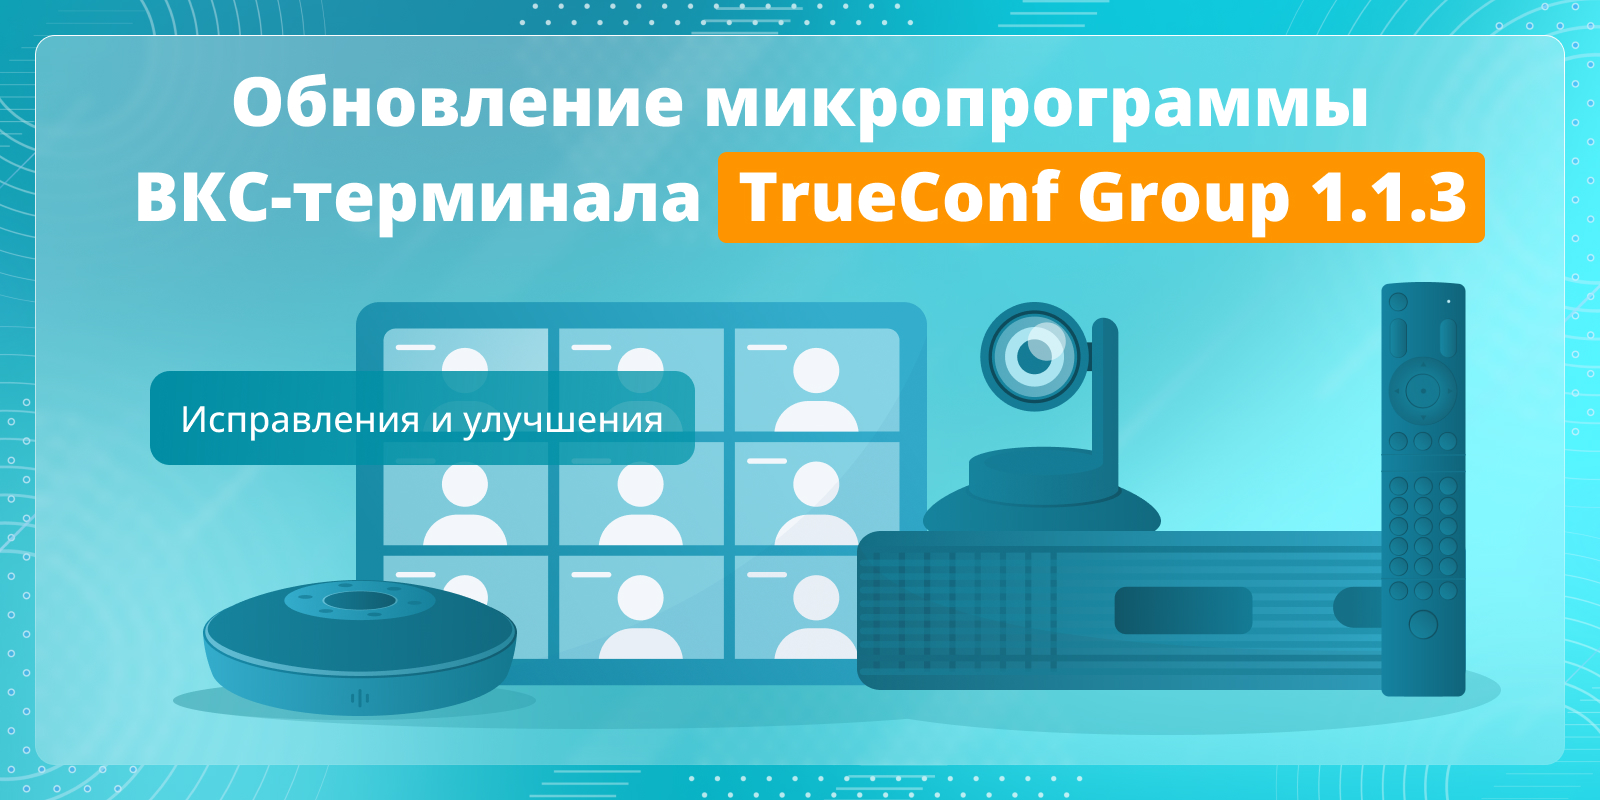 Обновление TrueConf Group 1.1.3: изменения и улучшения 1